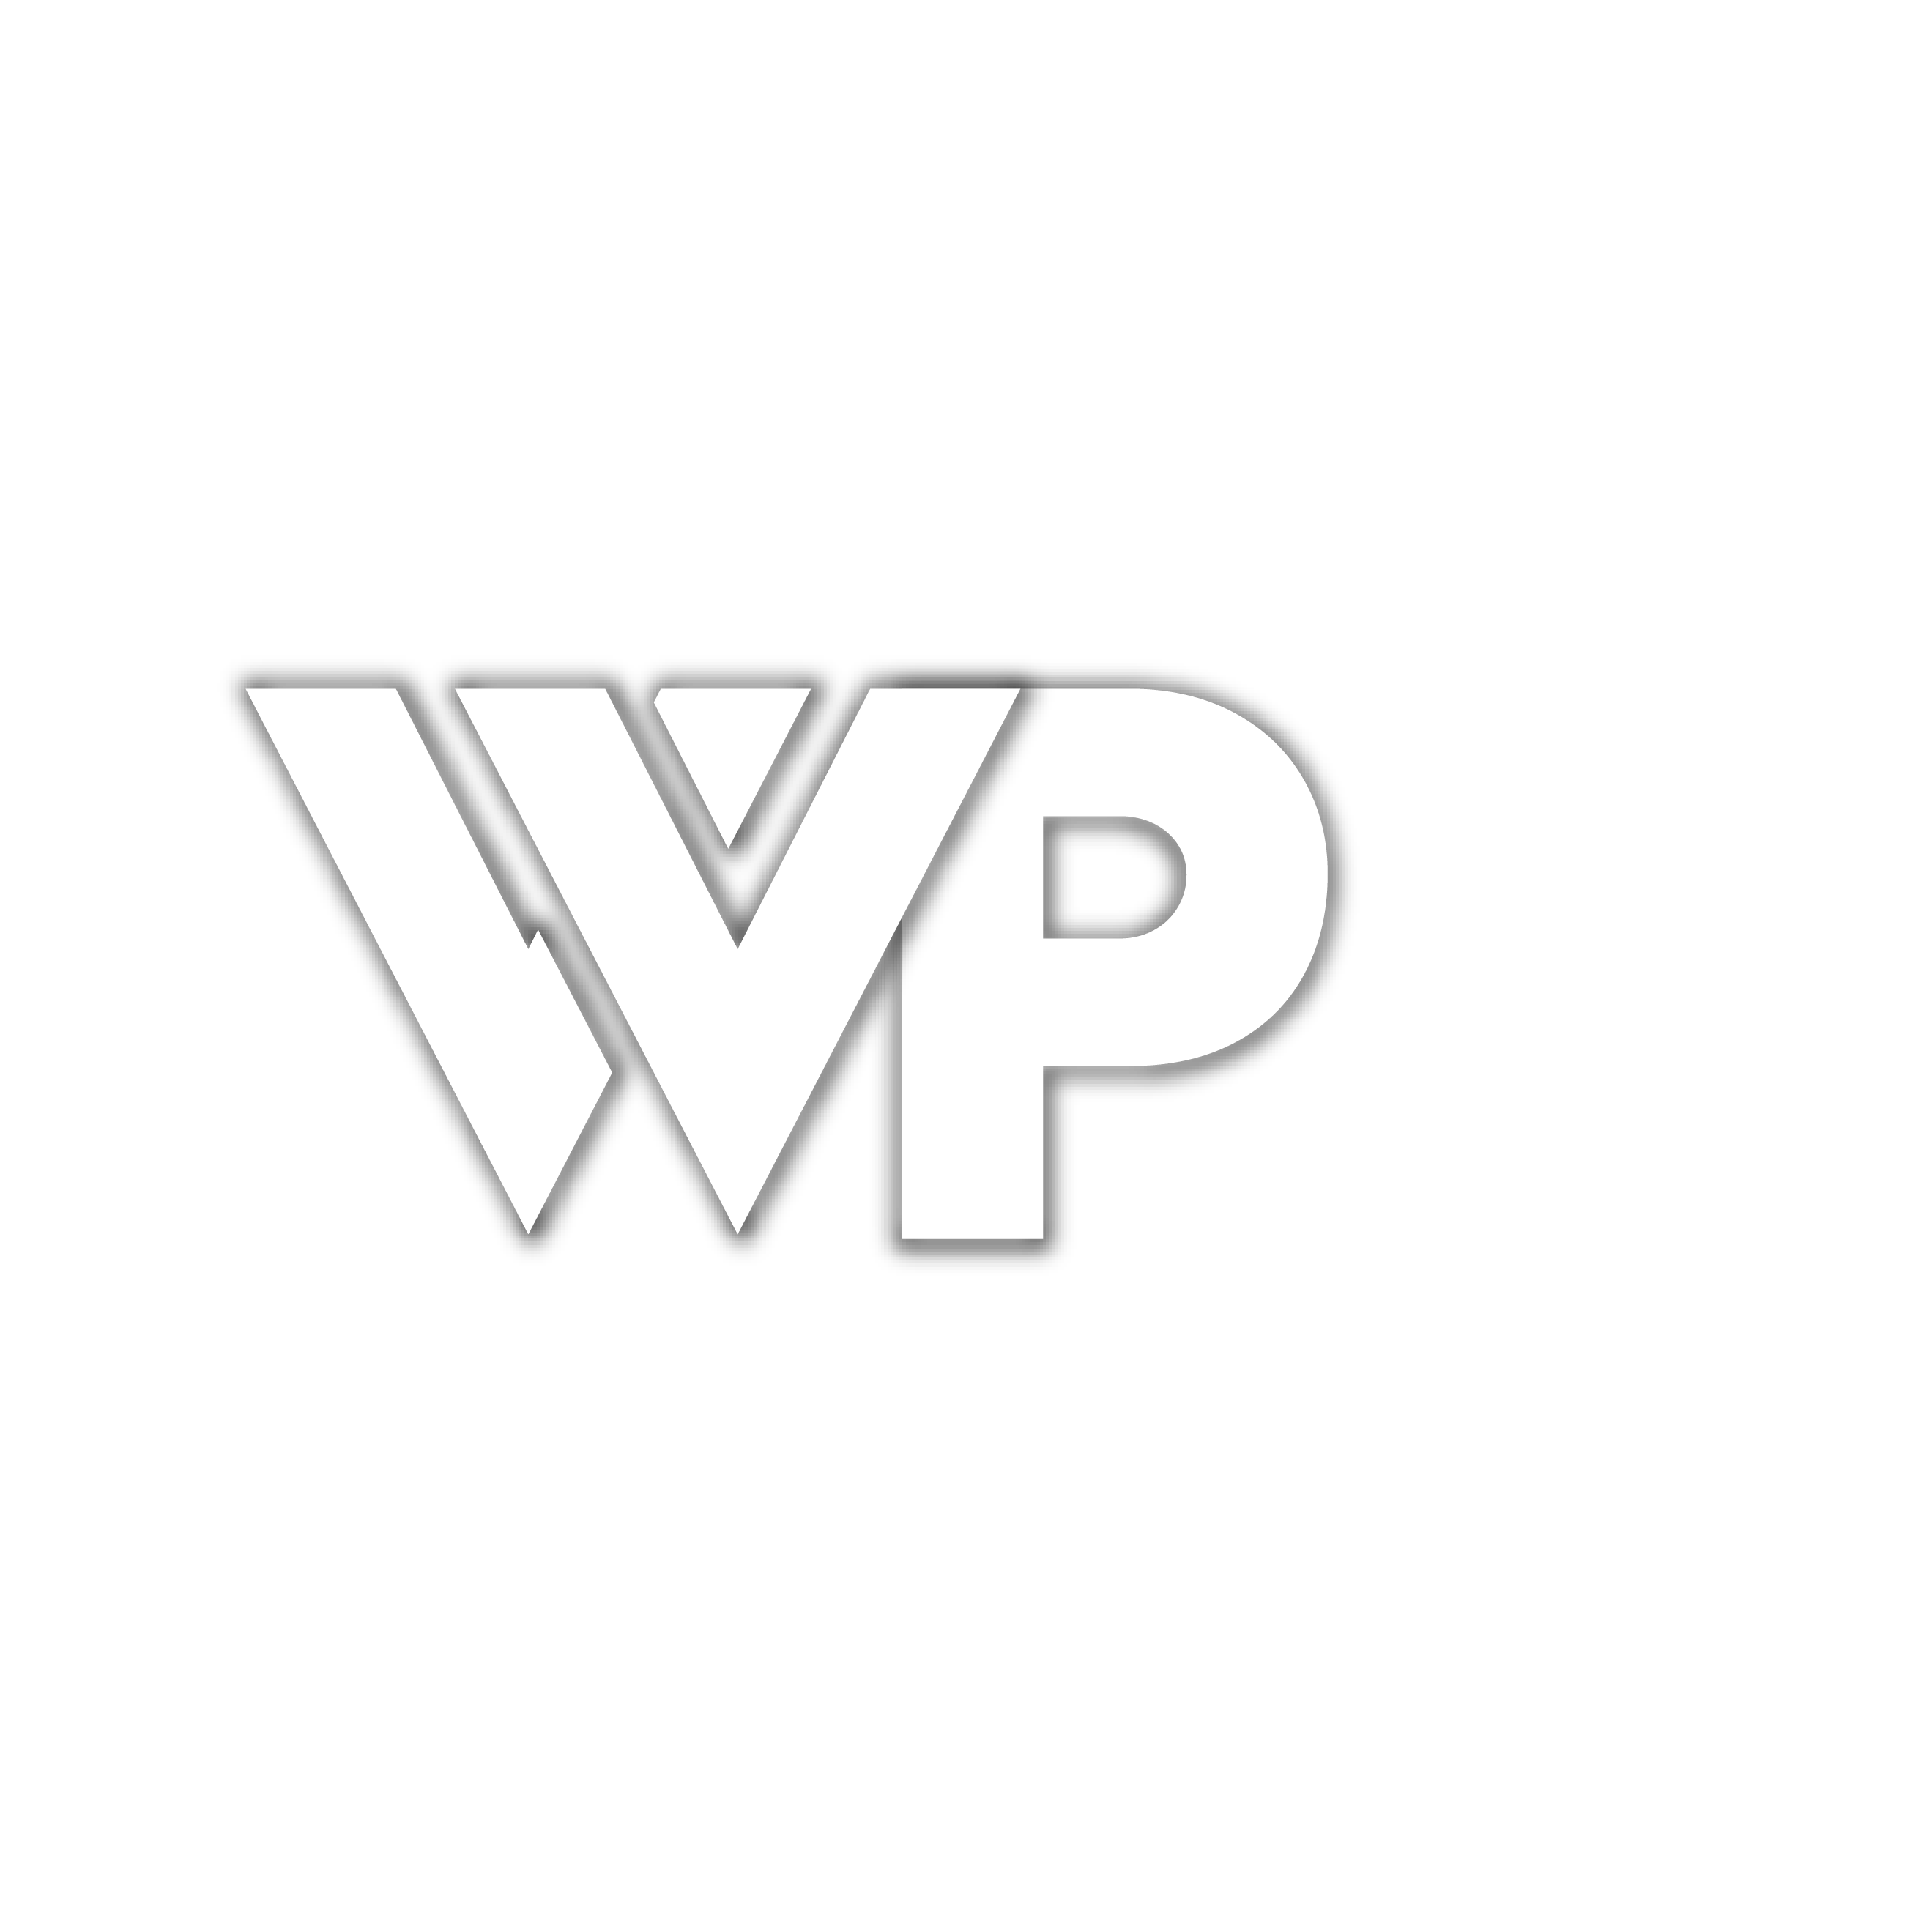 WPR Agencia de Mercadotecnia y Relaciones Públicas.